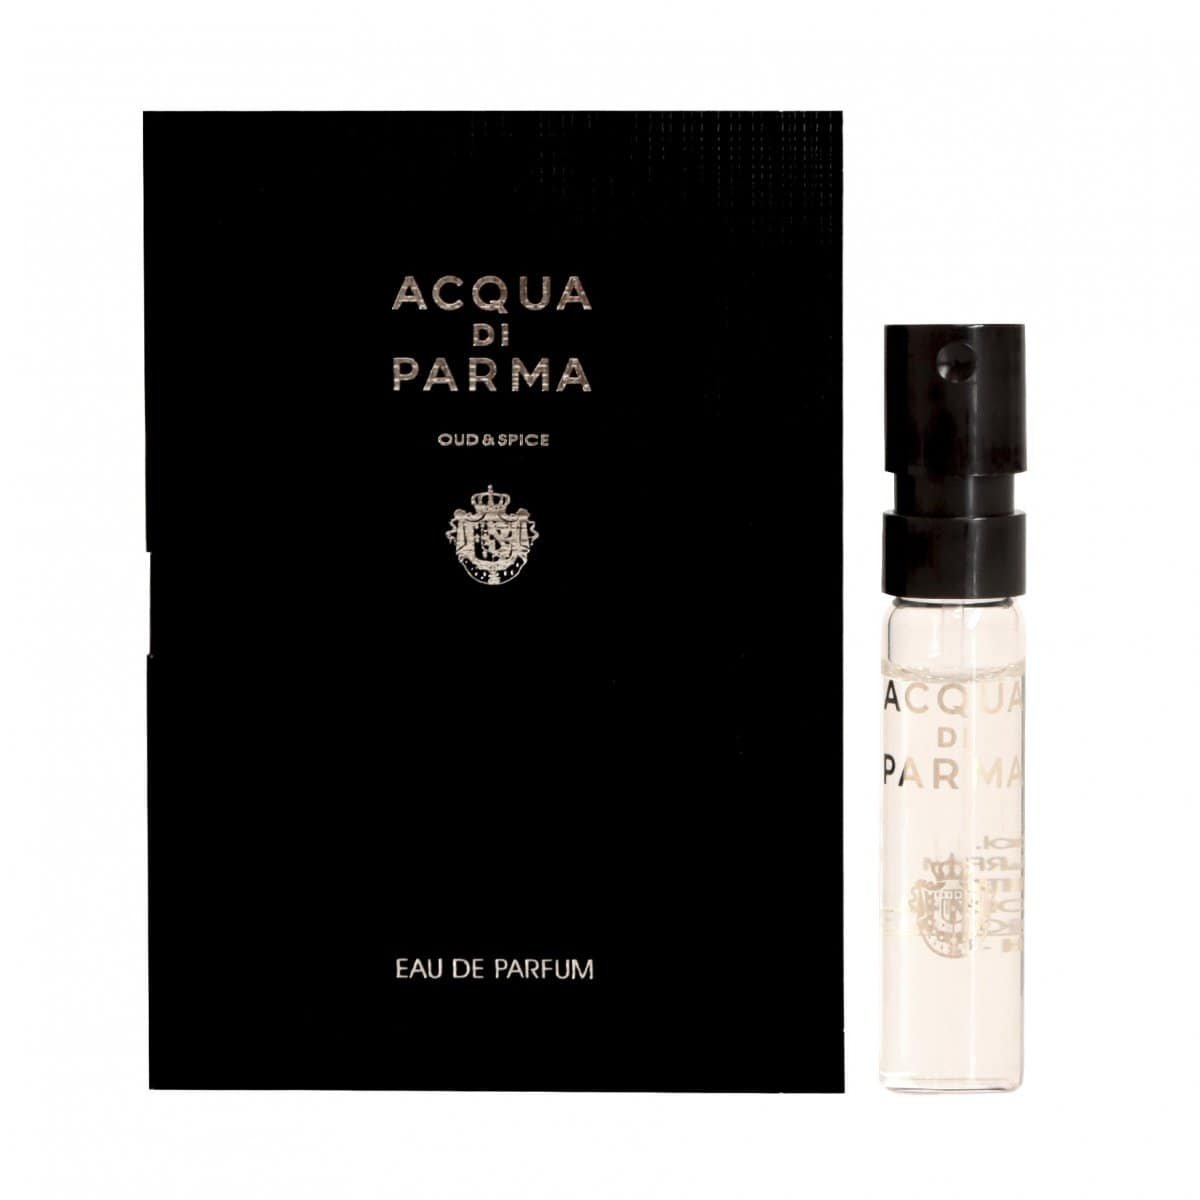 Acqua Di Parma Oud & Spice 1.5 ml 0.05 fl.oz. официални мостри на парфюми, Acqua Di Parma Oud & Spice 1.5 ml 0.05 fl.oz. официални мостри на аромати